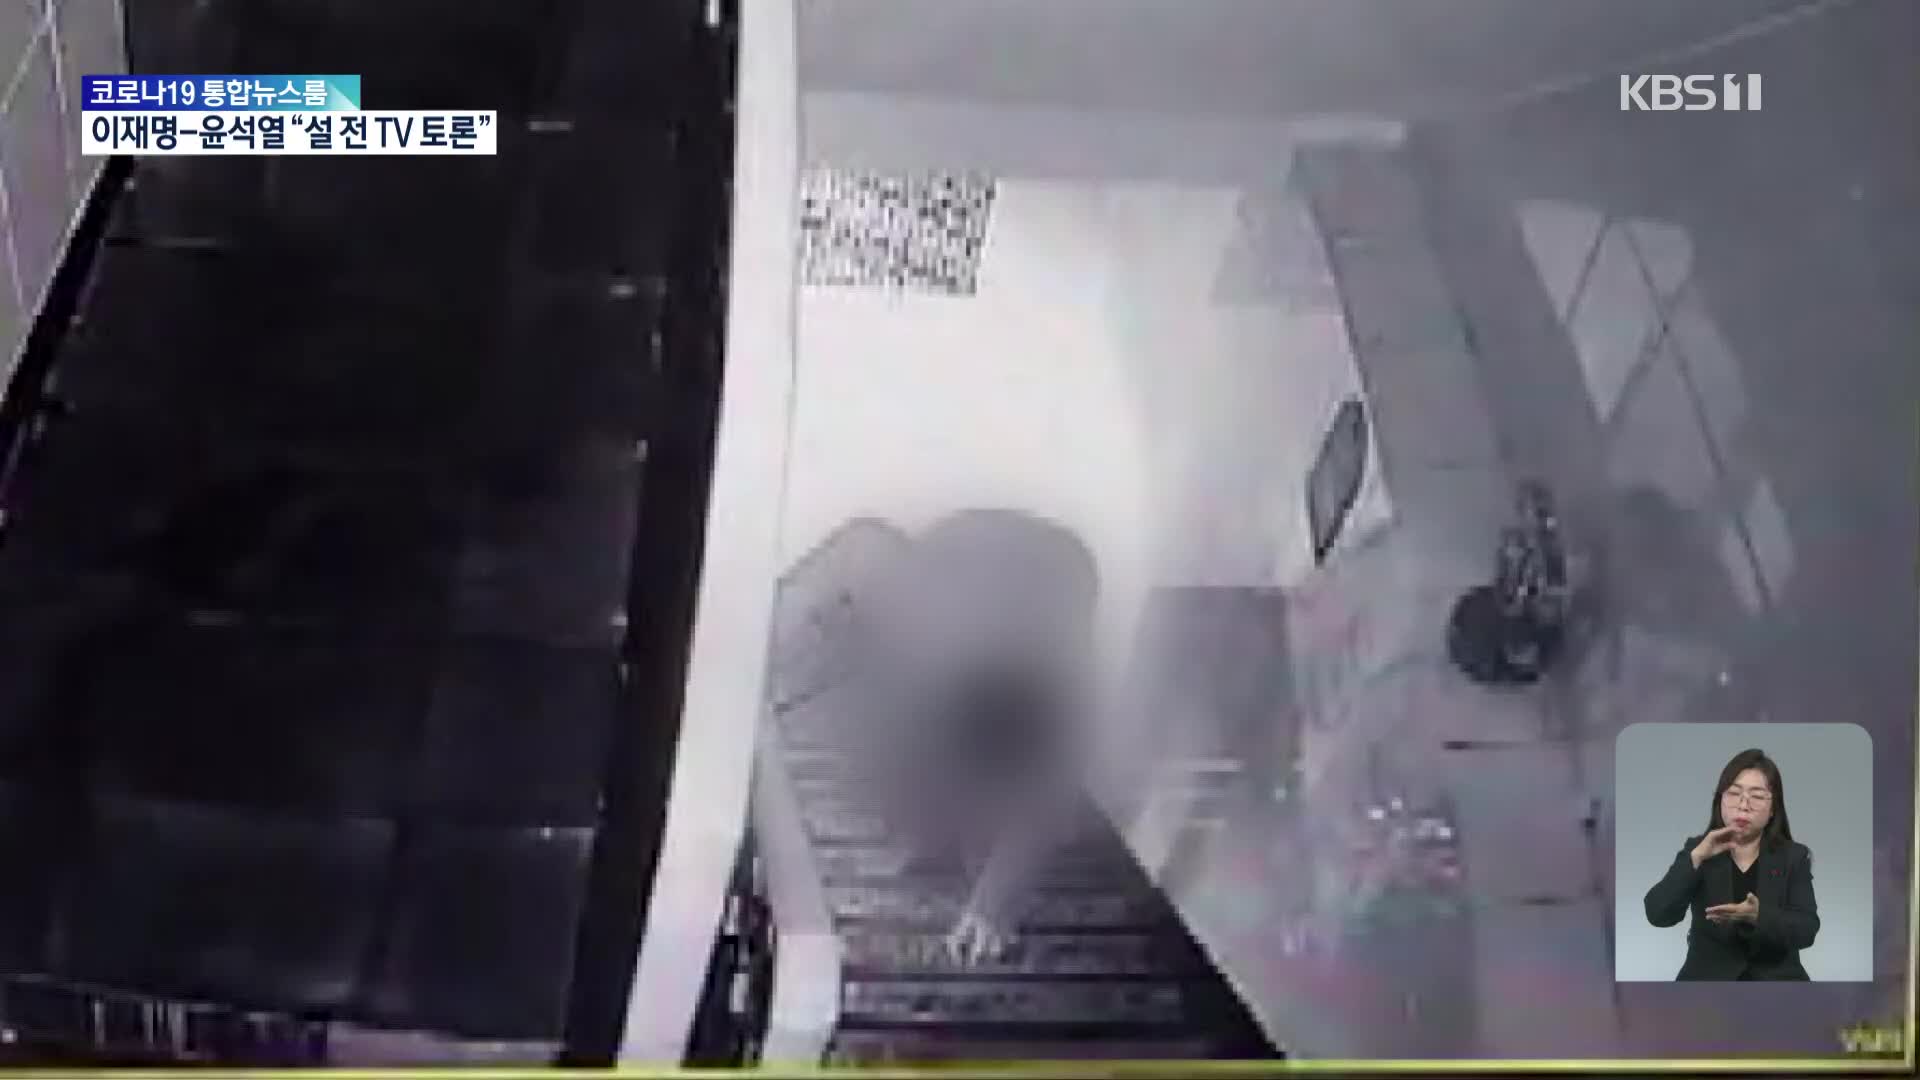 ‘이재명 의혹’ 제보자 심장질환 사망 추정…CCTV에 약 봉투 든 모습